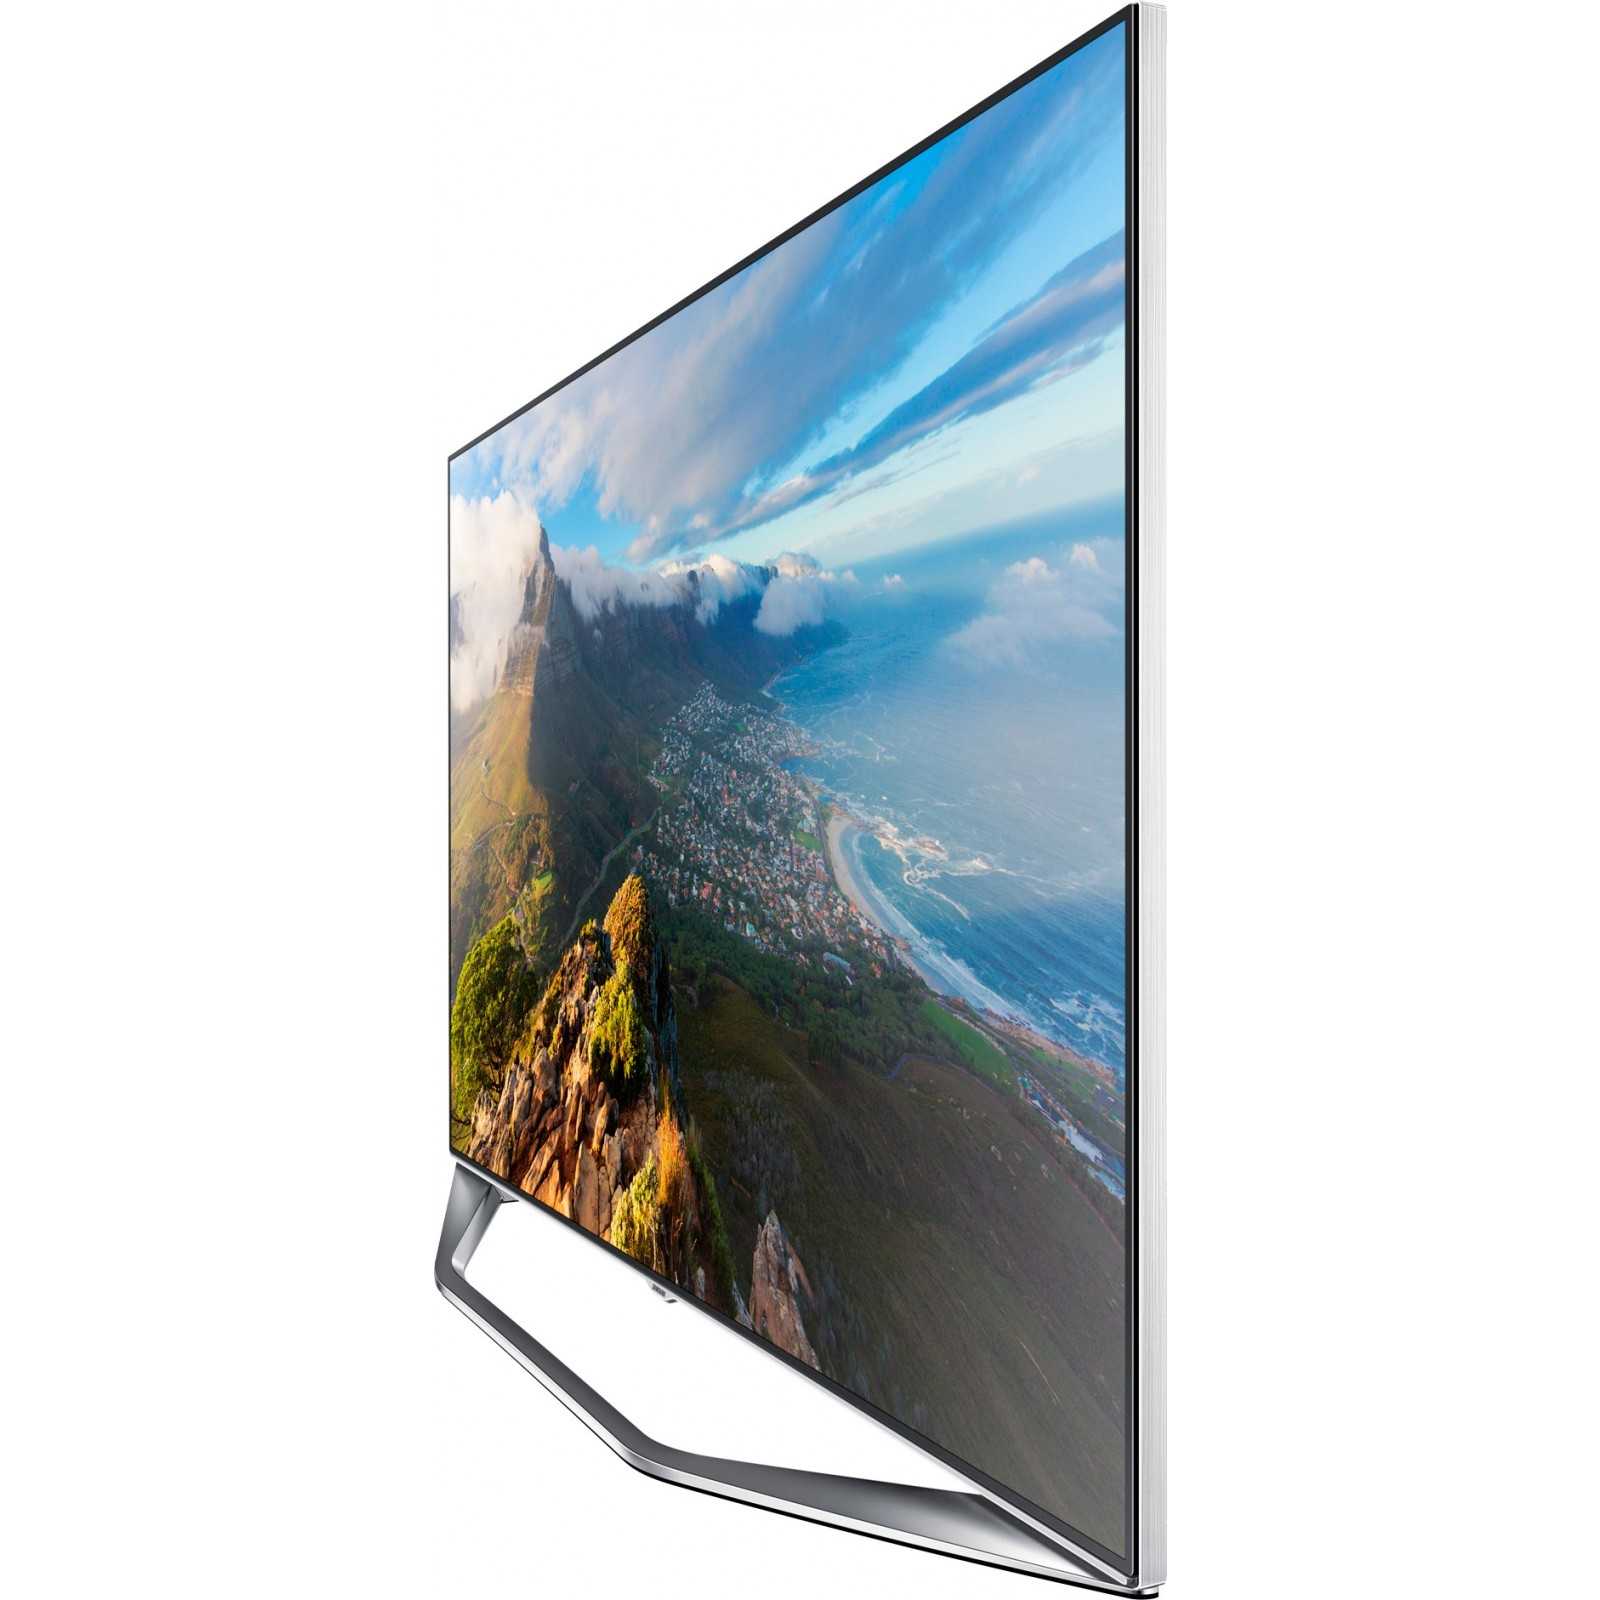 Телевизор Samsung UE60H7000 - подробные характеристики обзоры видео фото Цены в интернет-магазинах где можно купить телевизор Samsung UE60H7000